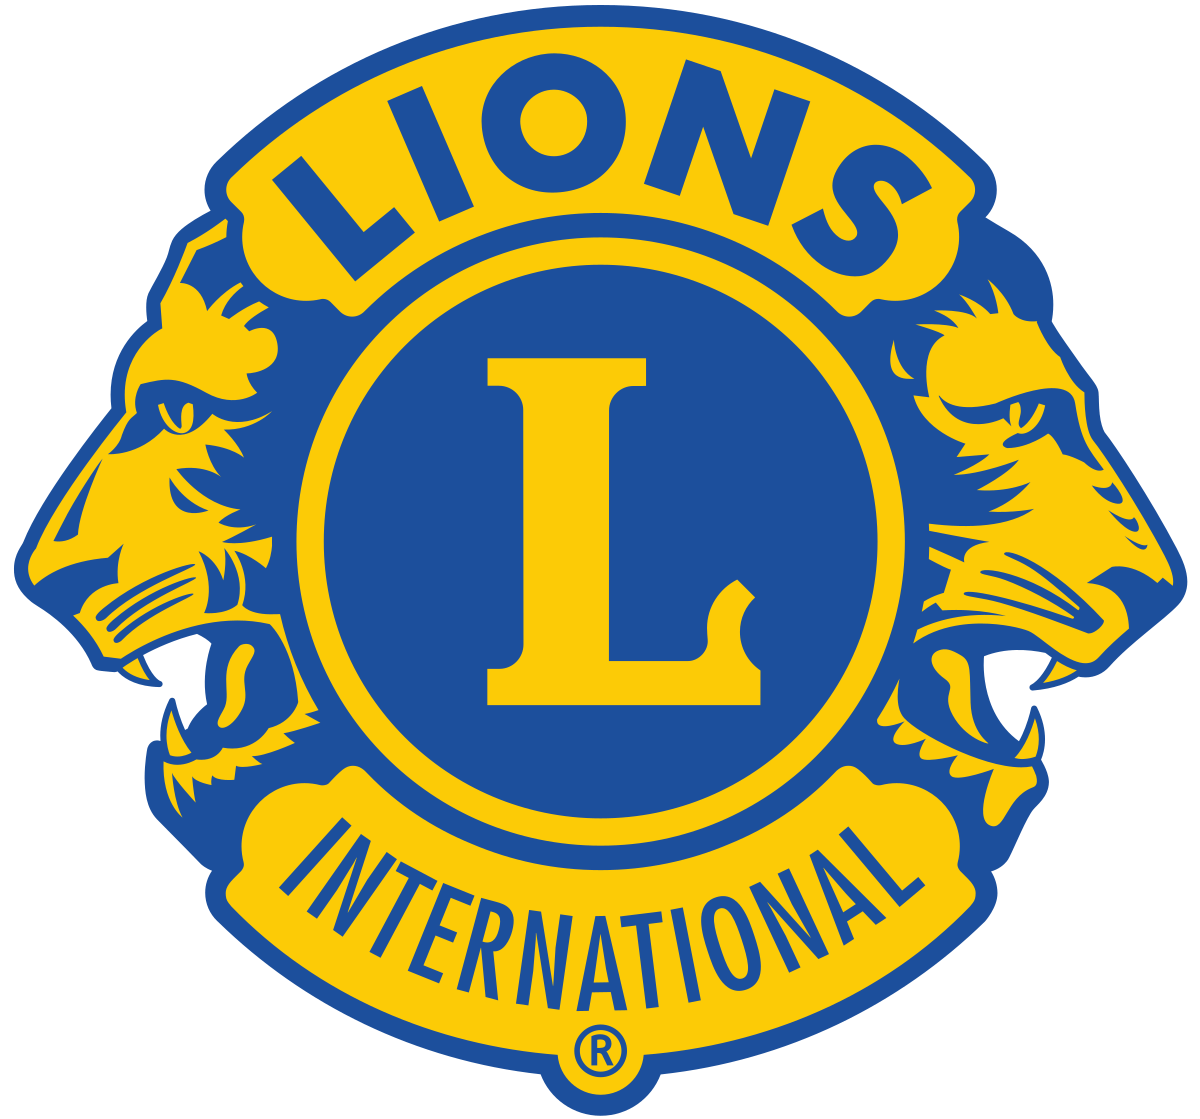 Blue International Logo - Lions Clubs International